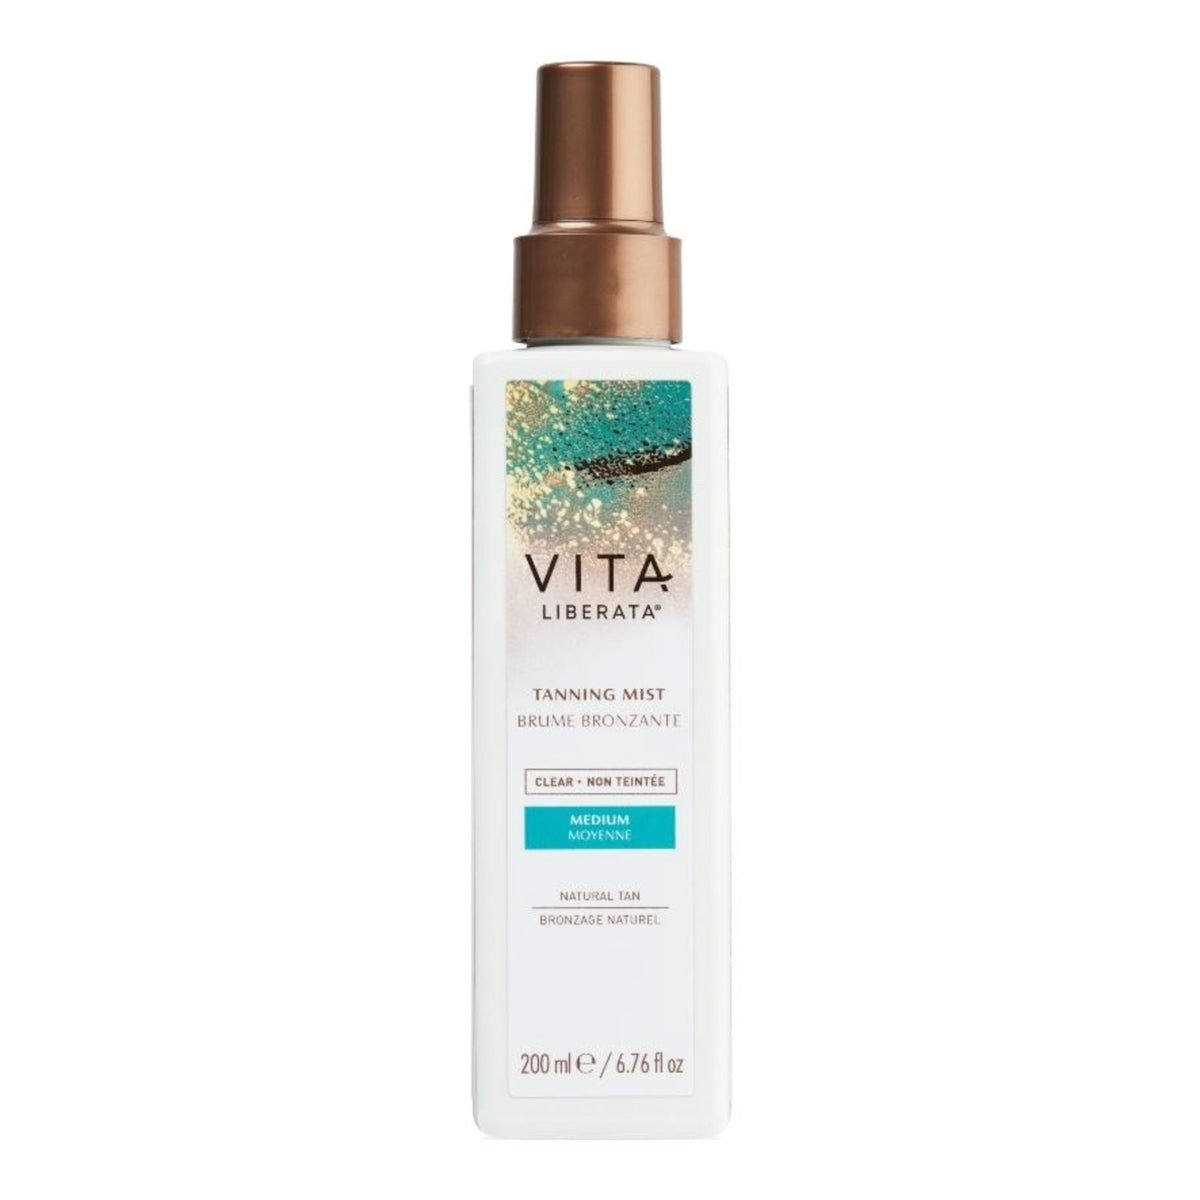 Vita Liberata - Tanning Mist - 200ml